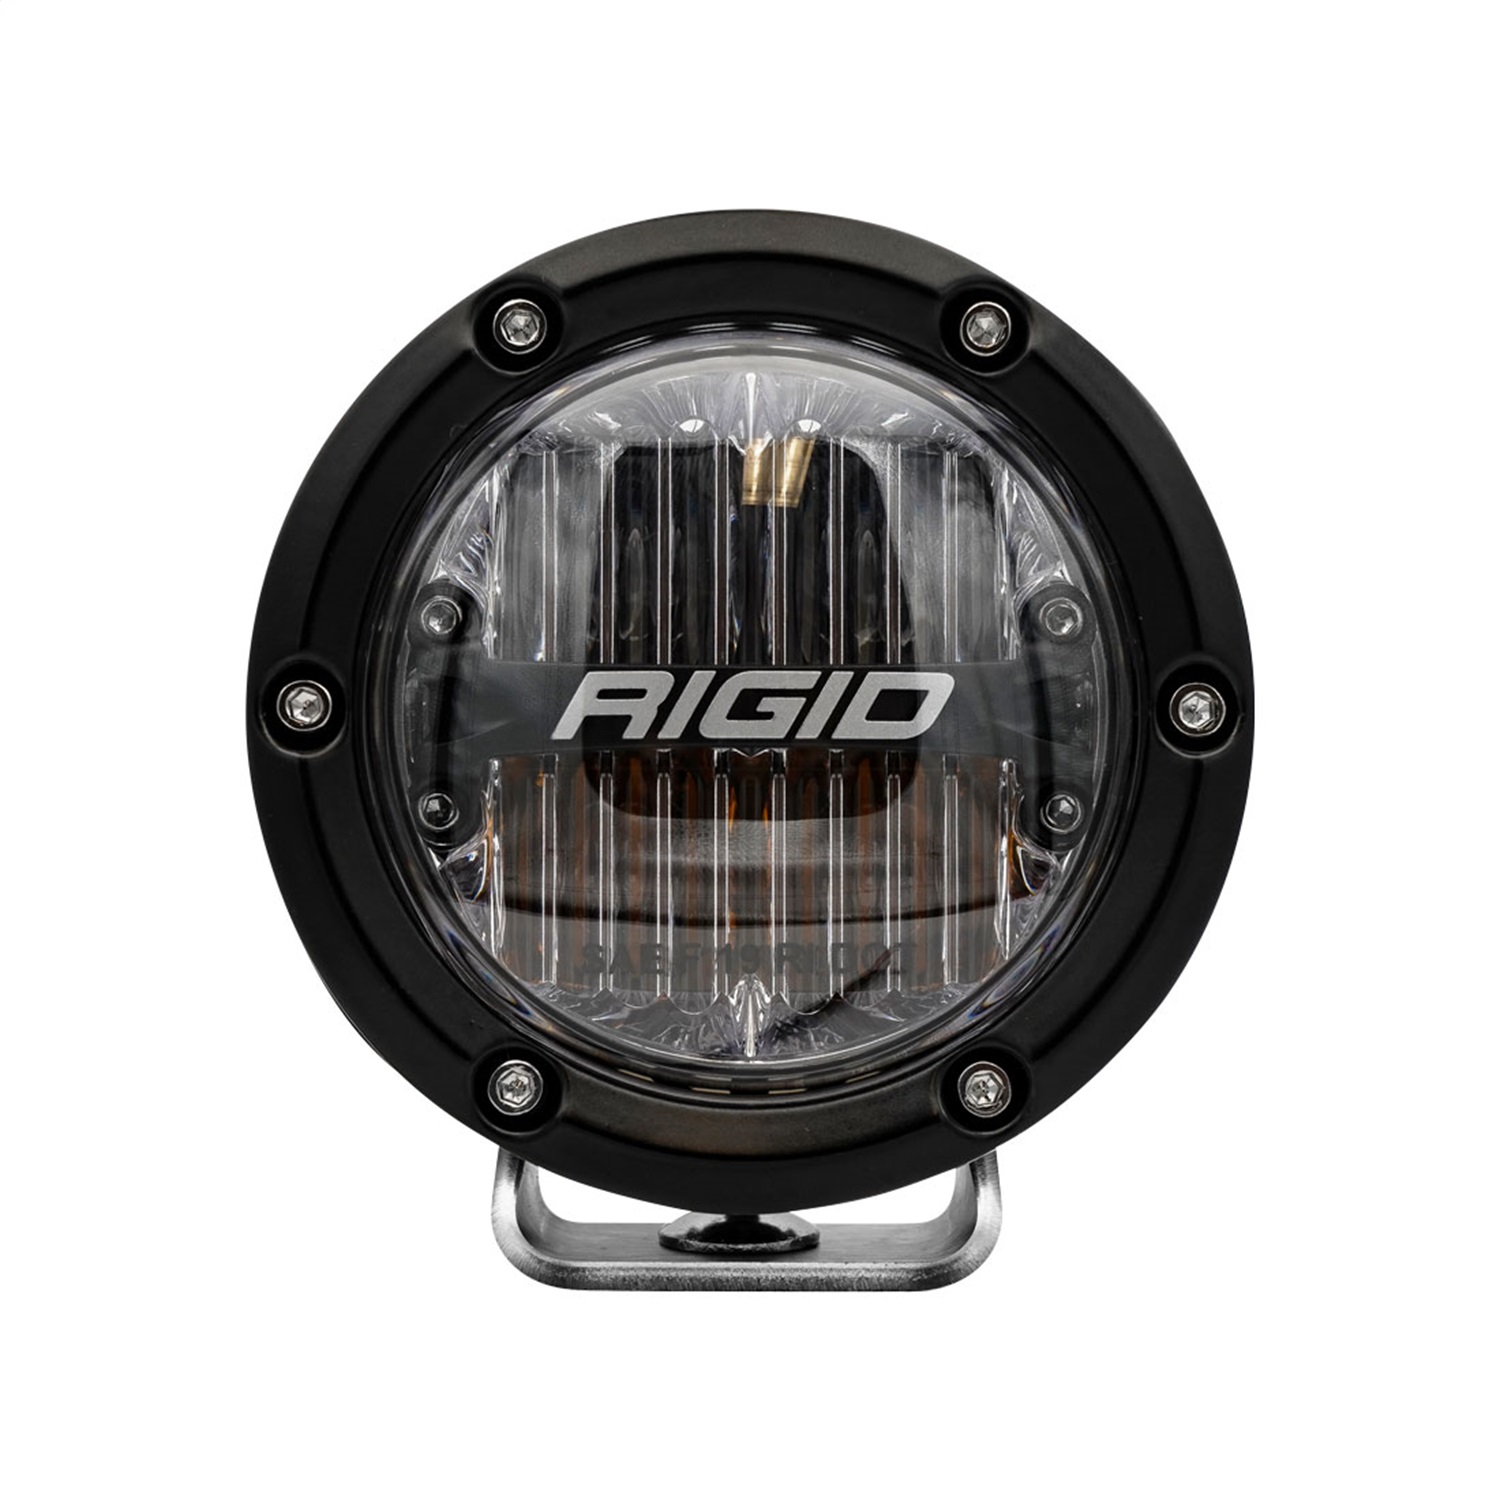 Rigid Industries 36122 360-Series Fog Light Mount Kit